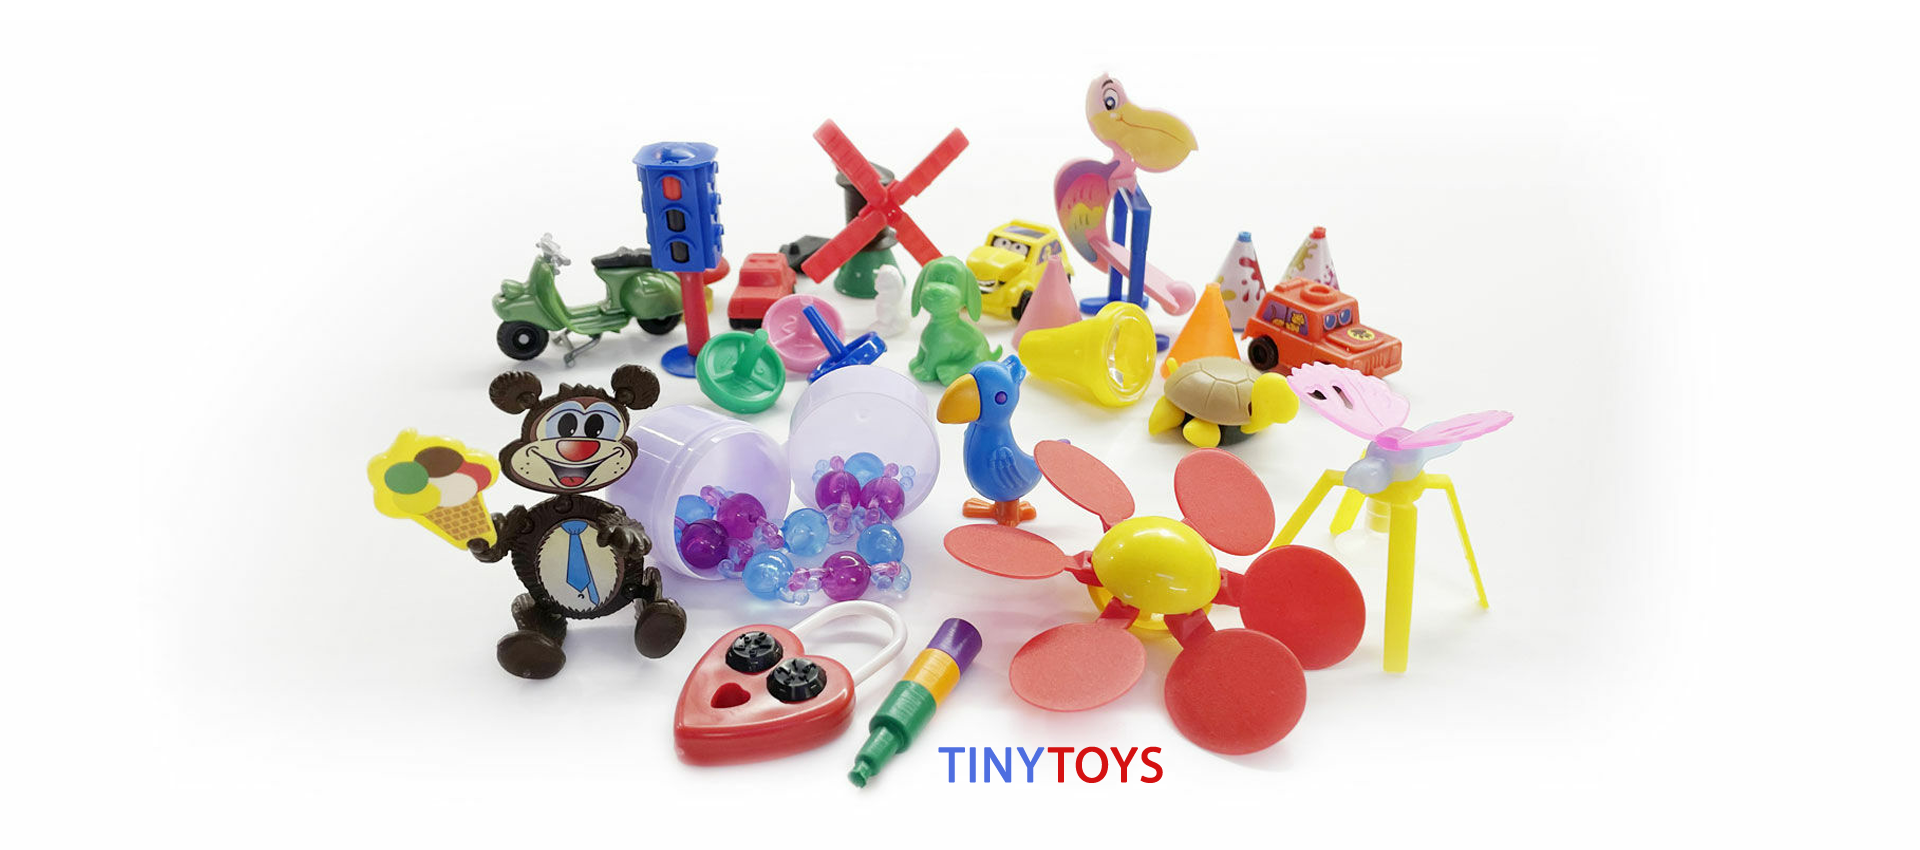 Tiny Toys - Sorprese Giocattoli per Ovetti di cioccolata per bambini | Riva del Garda - Italy